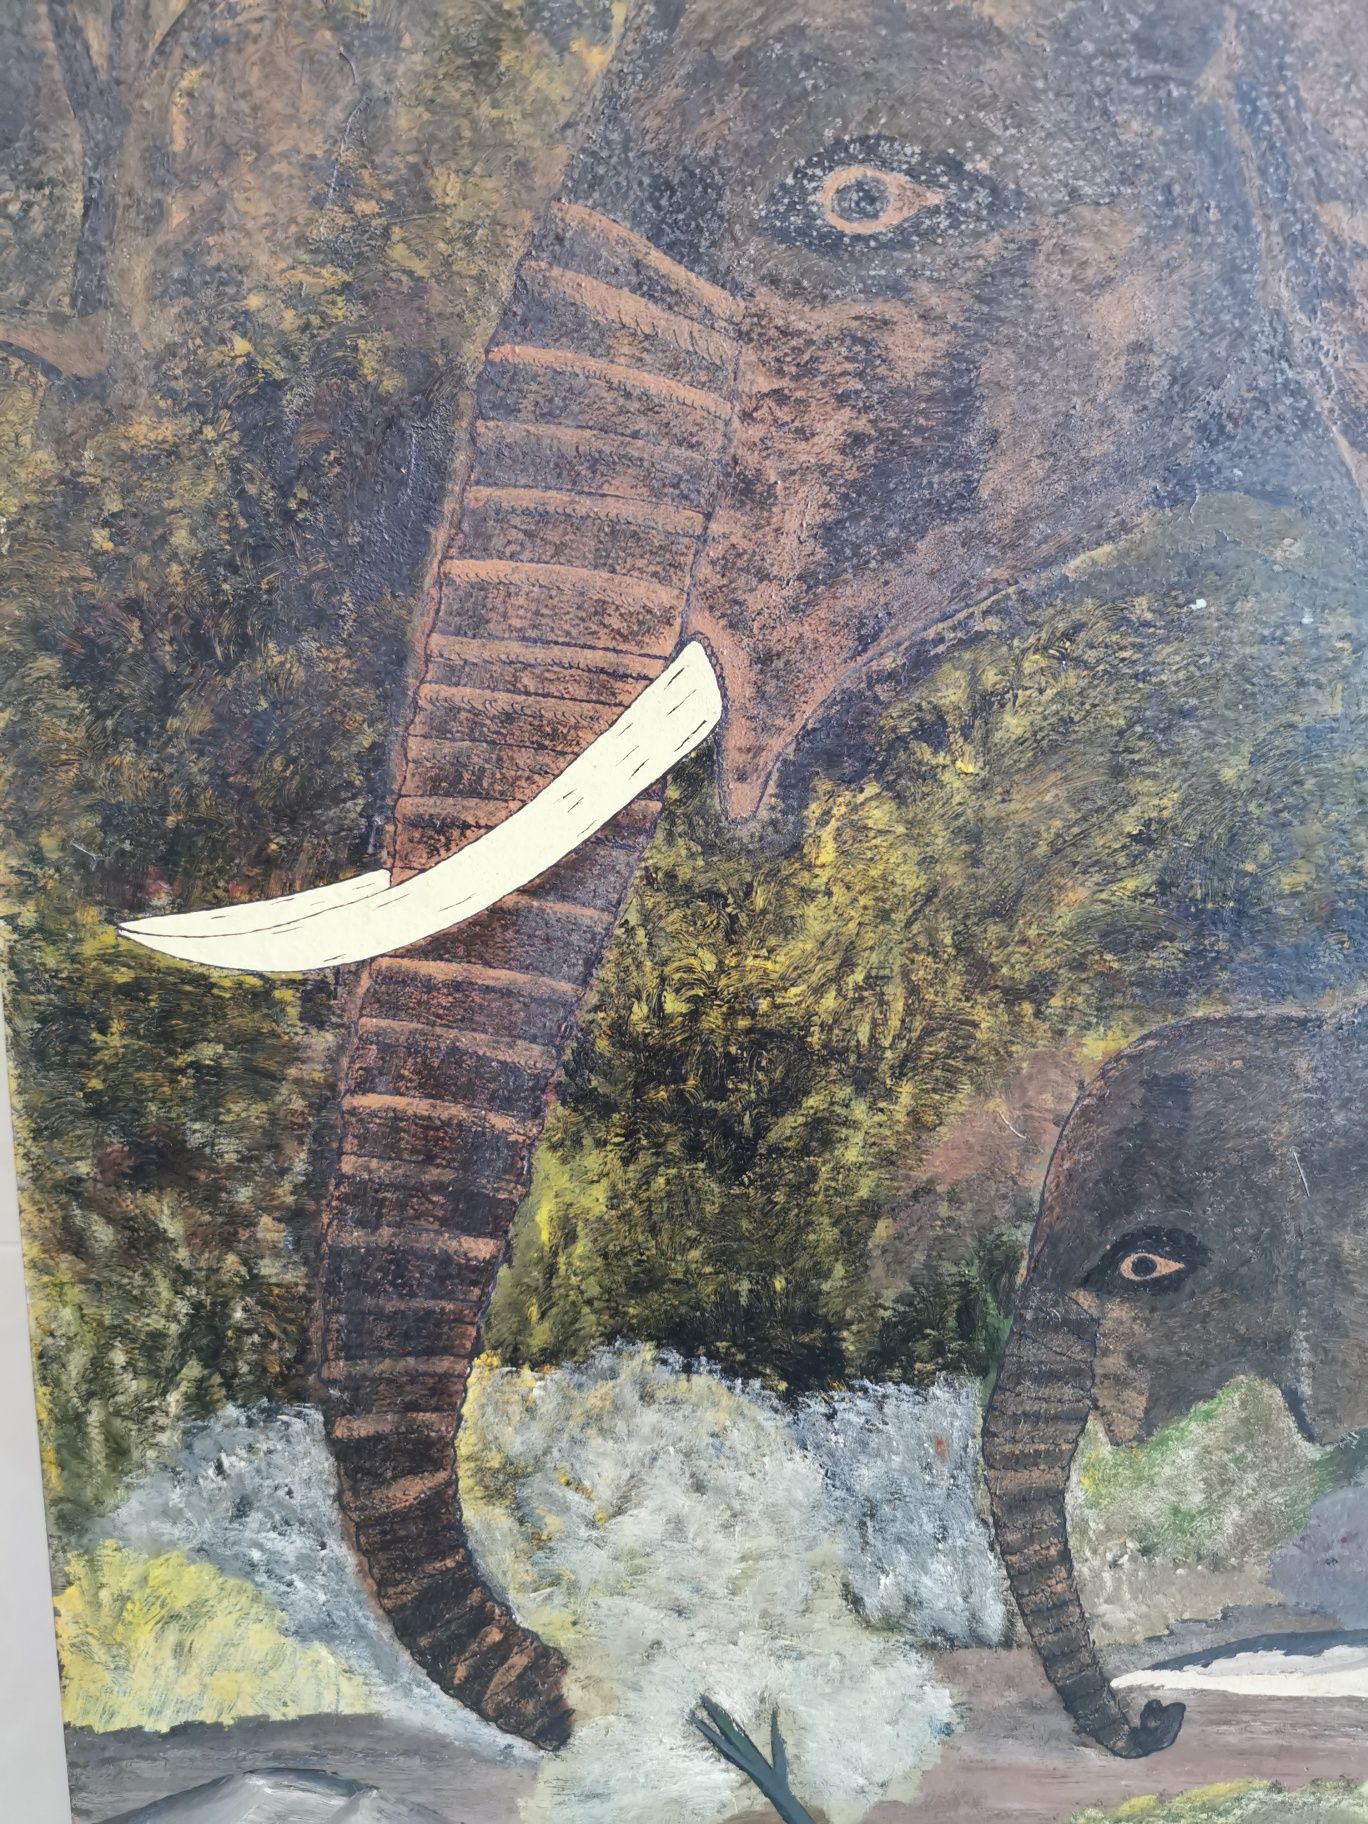 Quadro original com elefantes 2